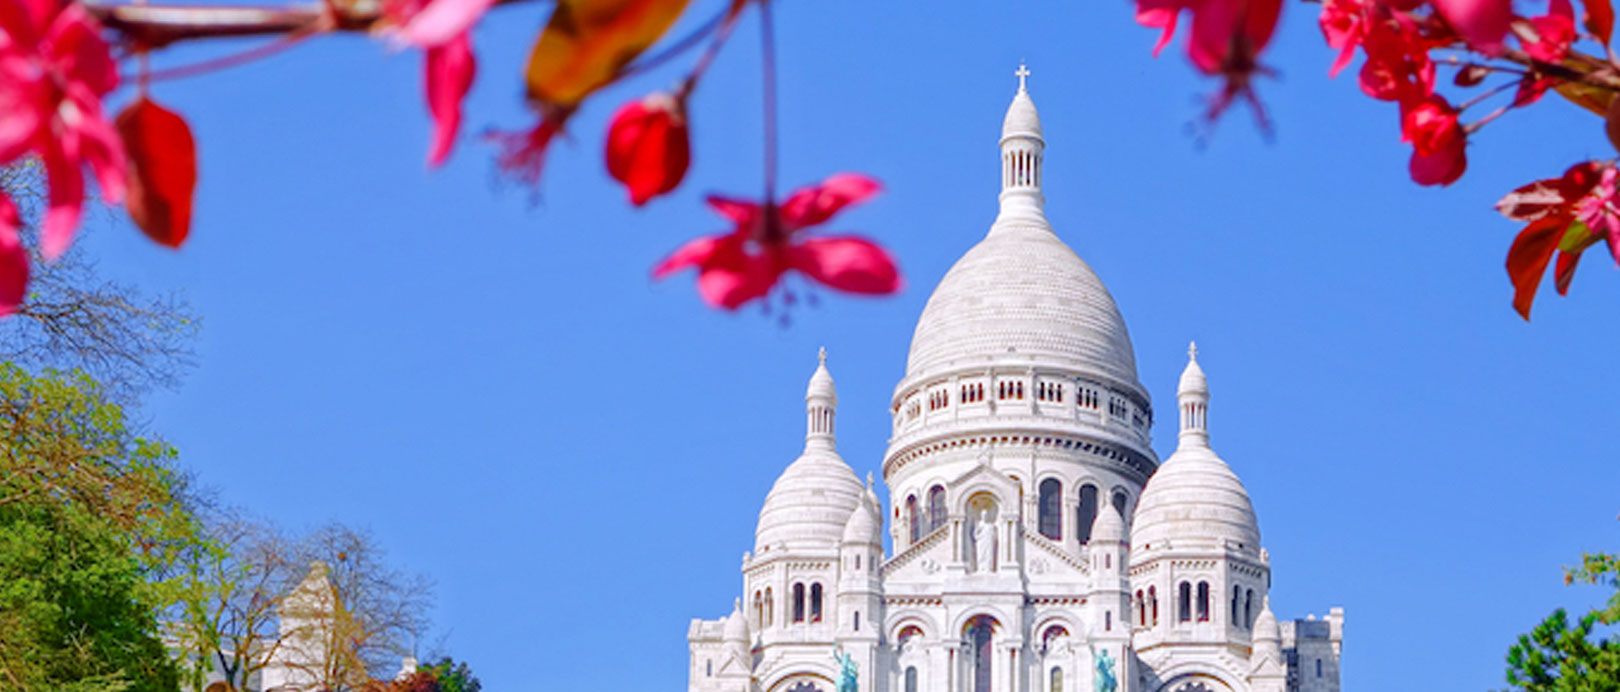 7 Interesting Facts About Sacré Coeur In Paris